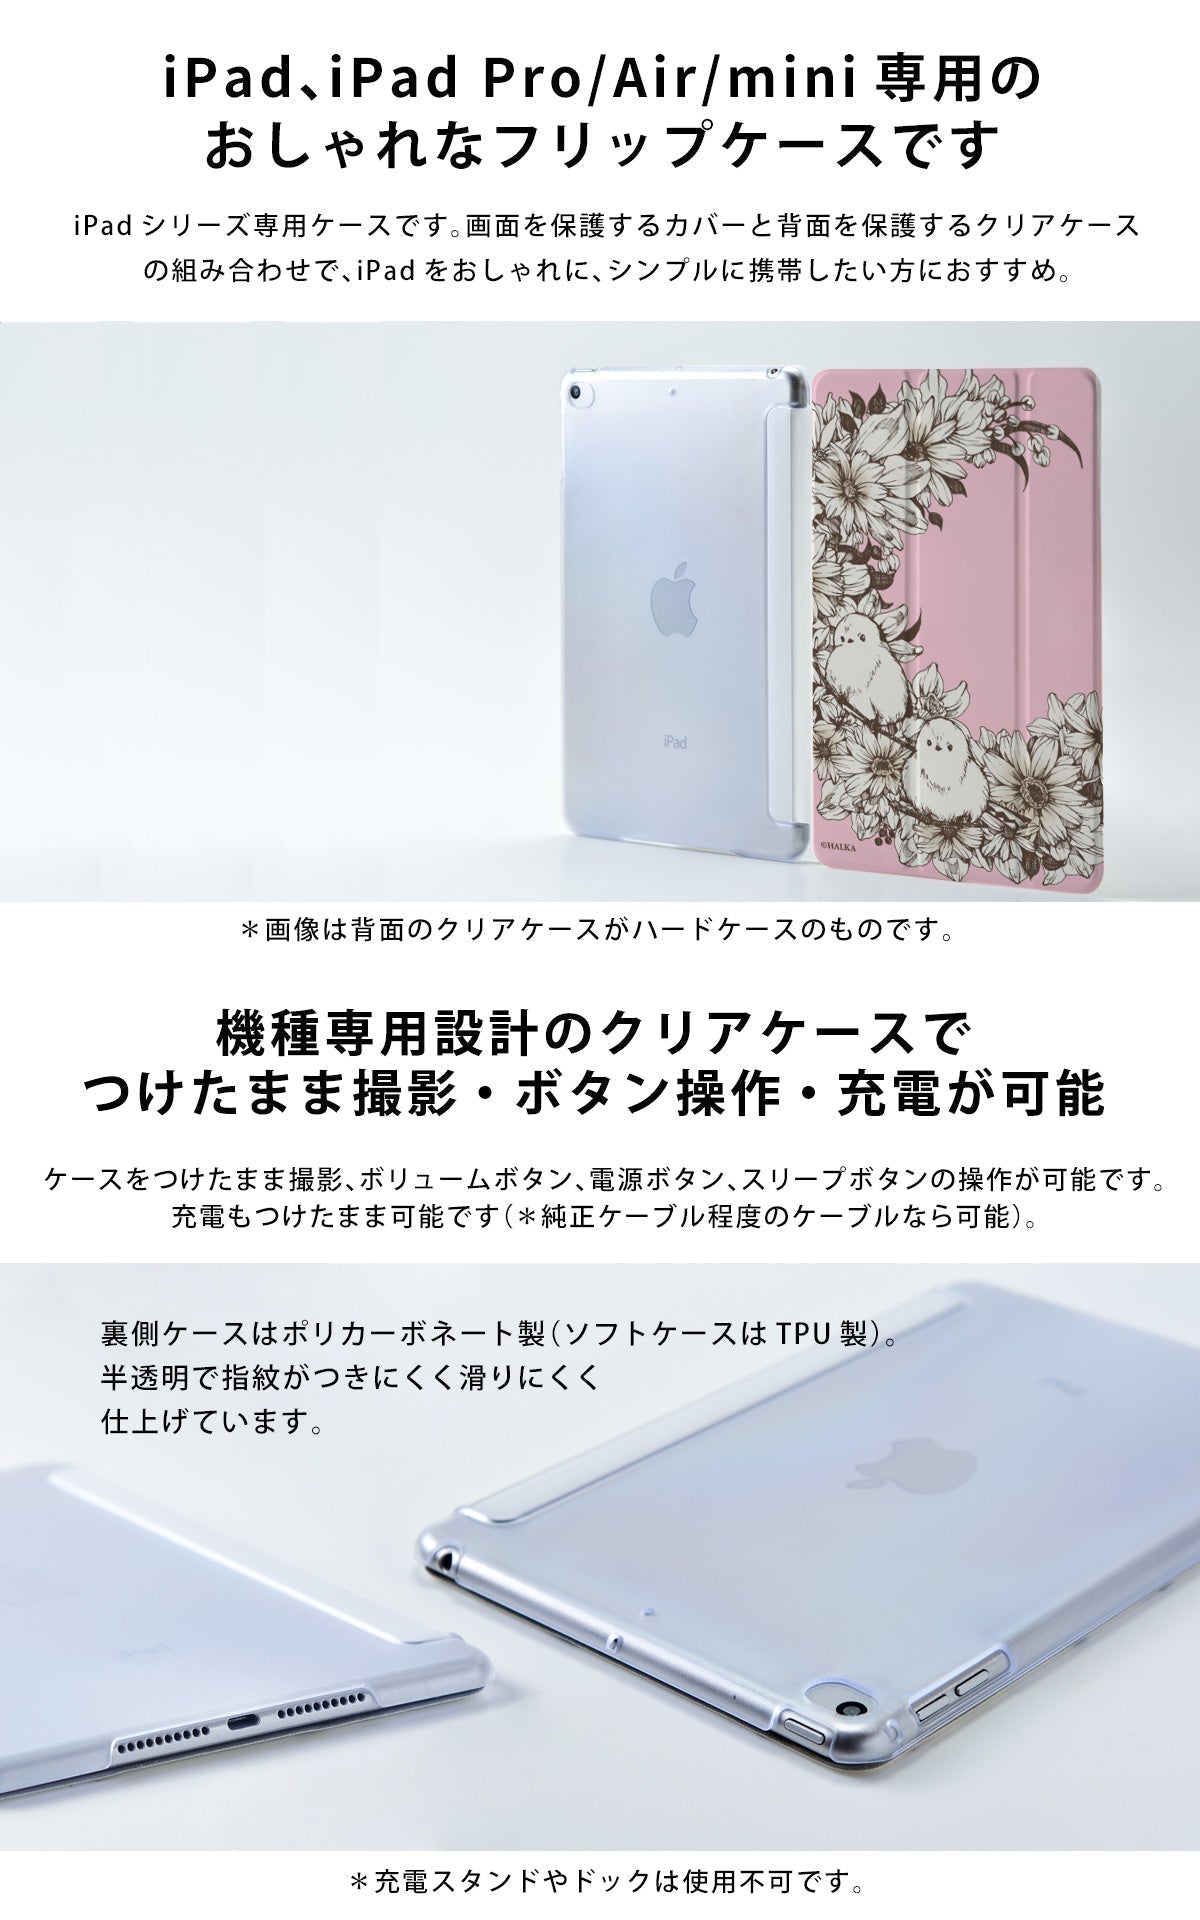 iPad ケース Air 5/4/3/2/1 10.9インチ iPadAir5 iPadケース おしゃれ かわいい 楽器 名入れ